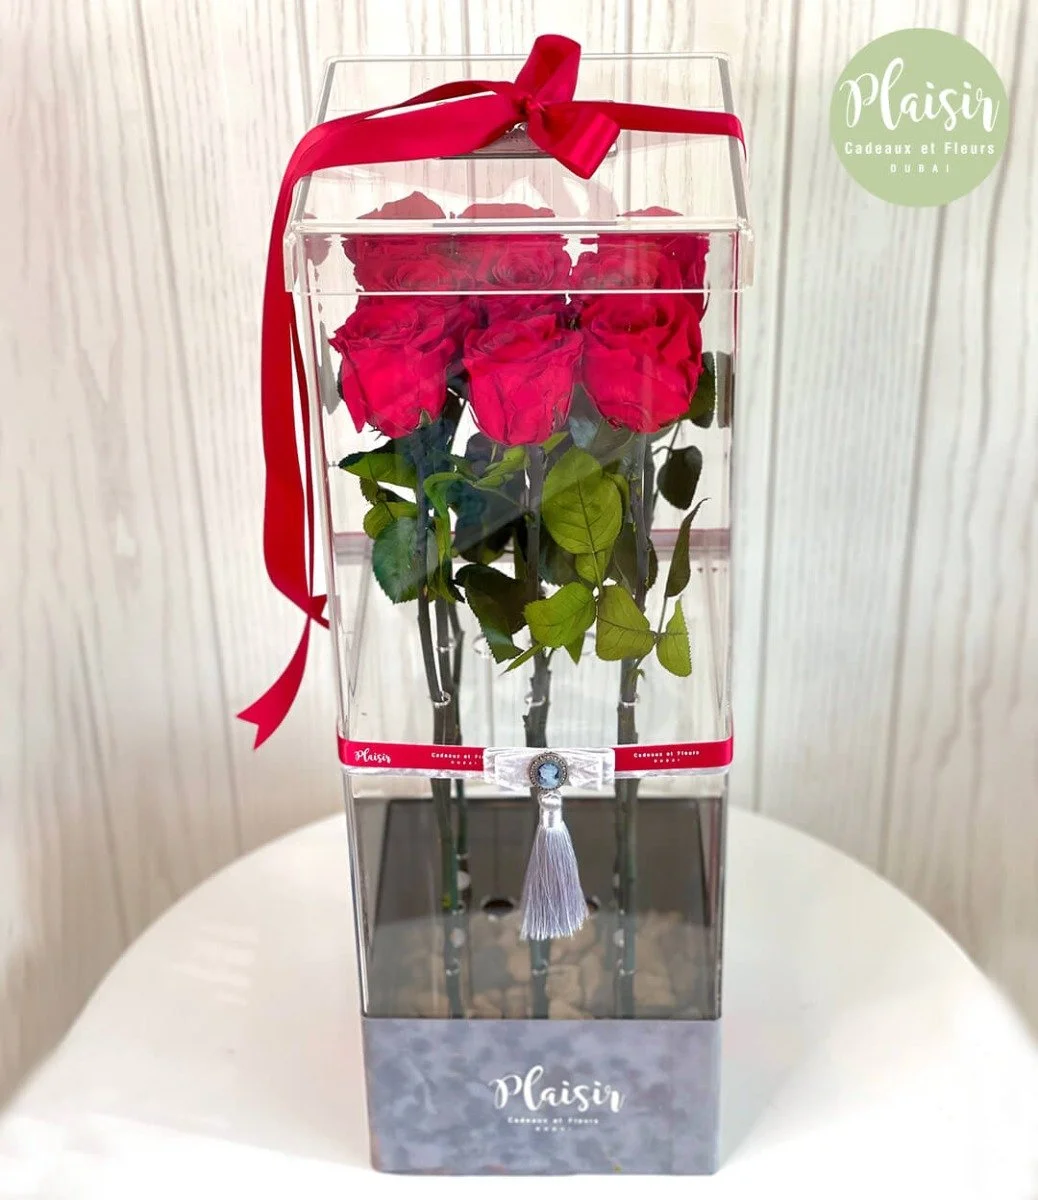 Vip Fresh Tall Roses In An Acrylic Box By Plaisir